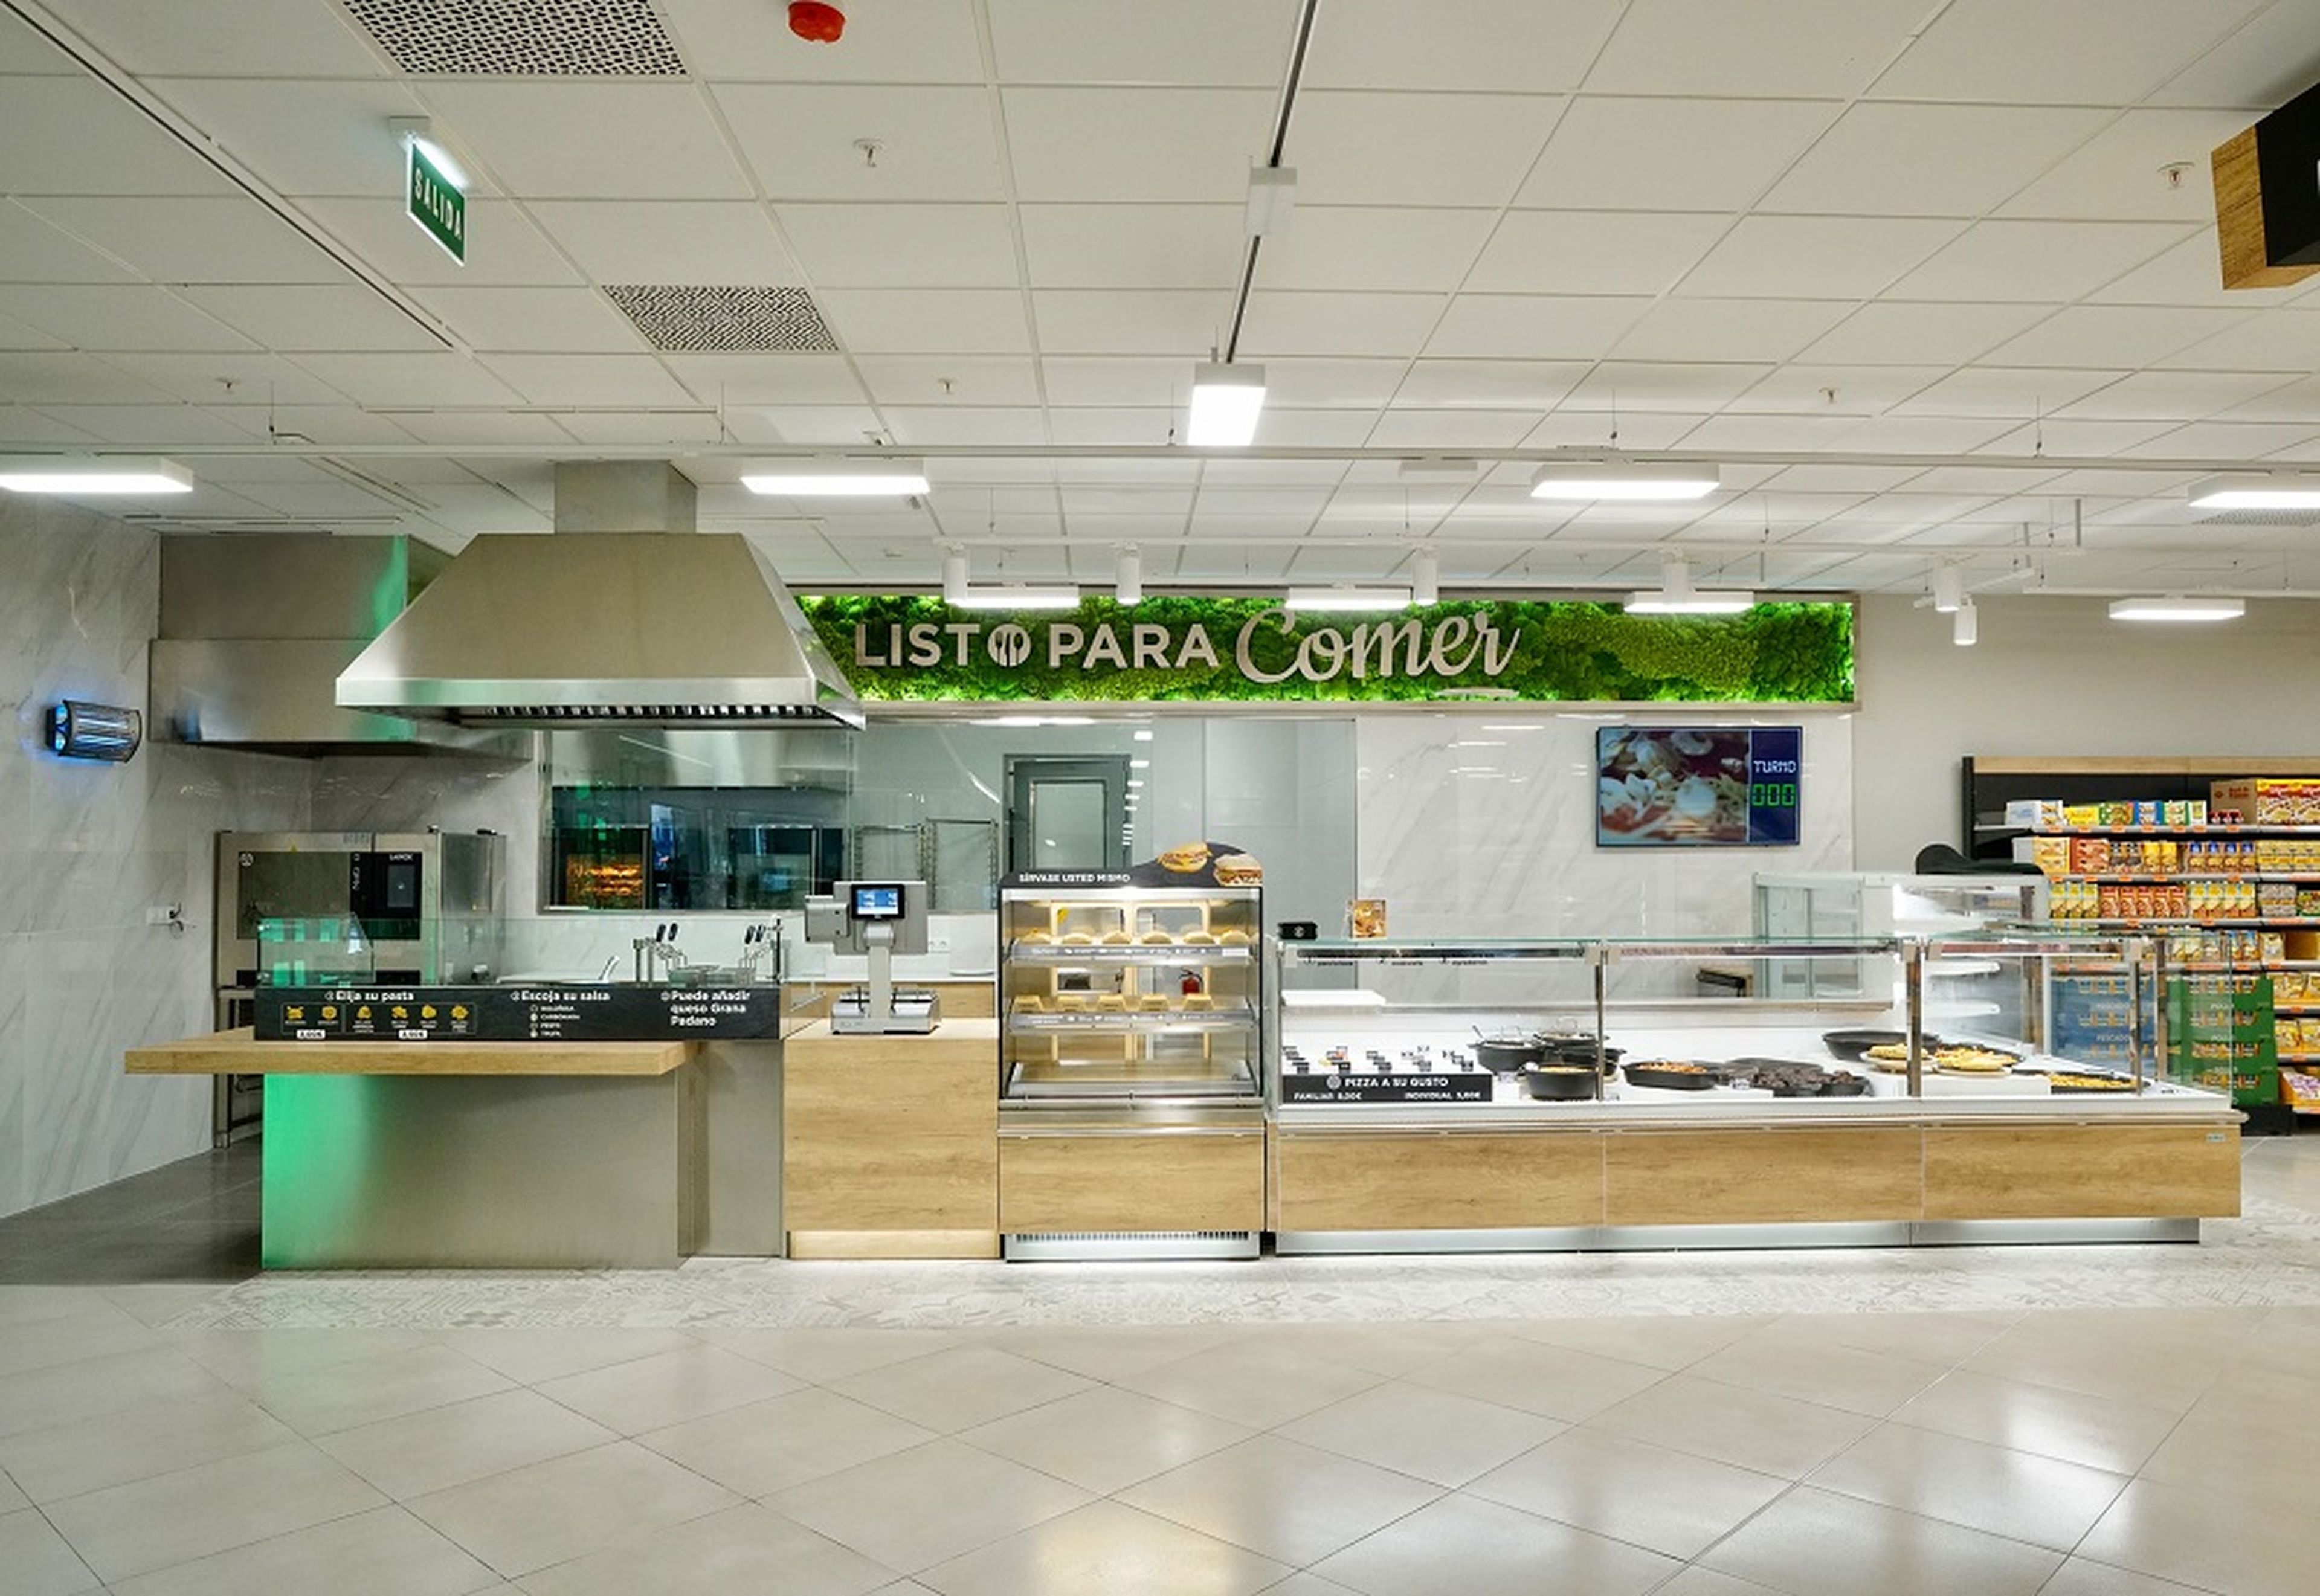 El mostrador Listo para comer, la nueva sección que Mercadona ha instalado en uno de sus supermercados.